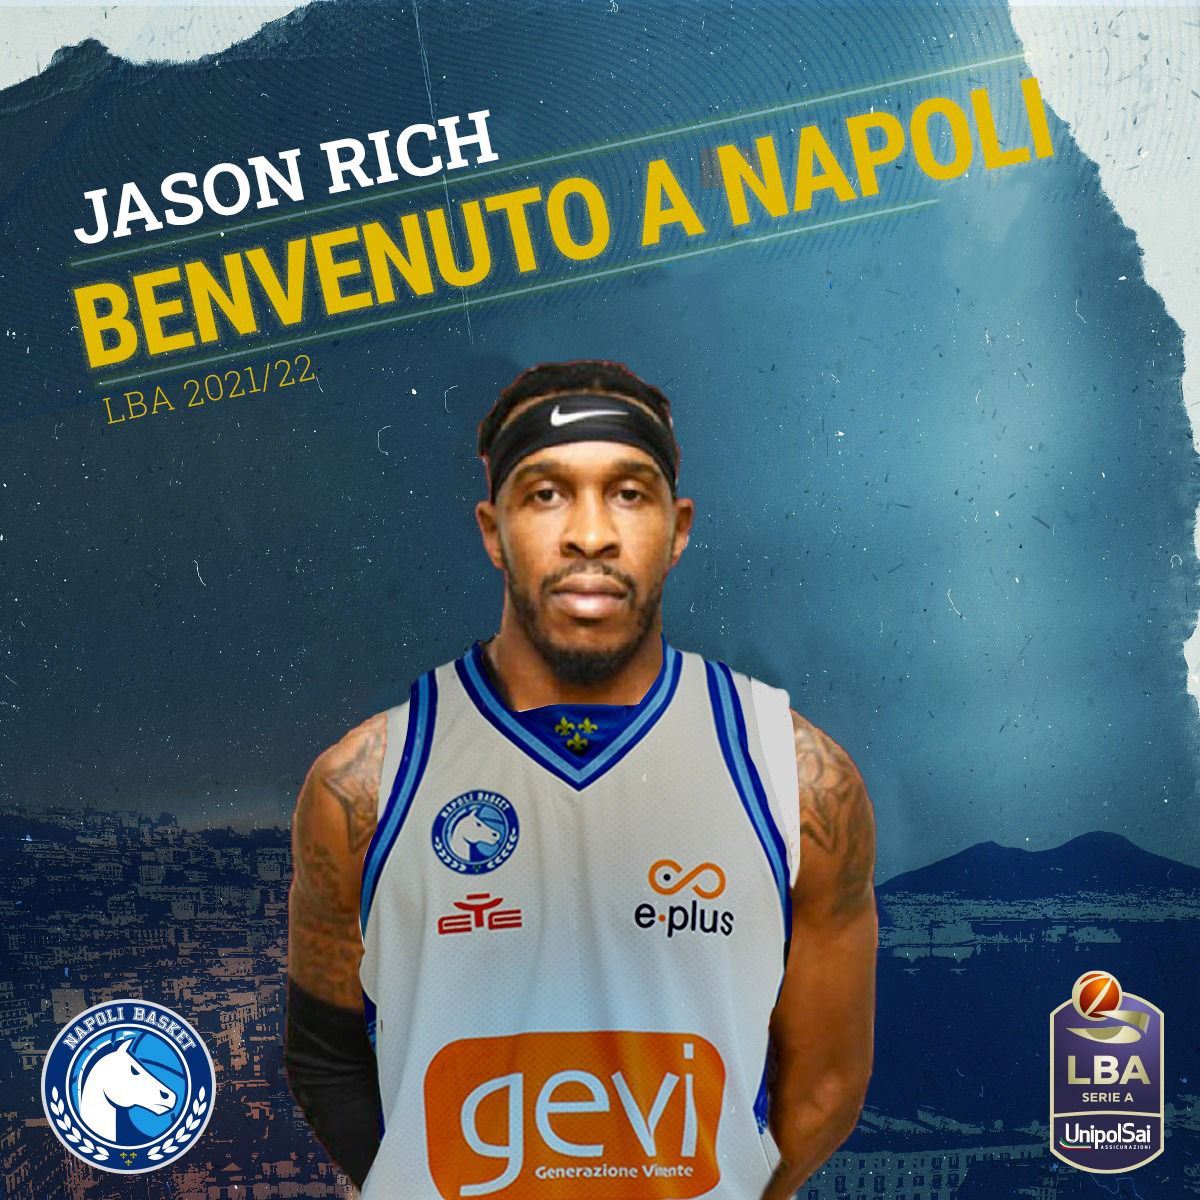 #LBA – GeVi Napoli, ufficiale l’arrivo di Jason Rich